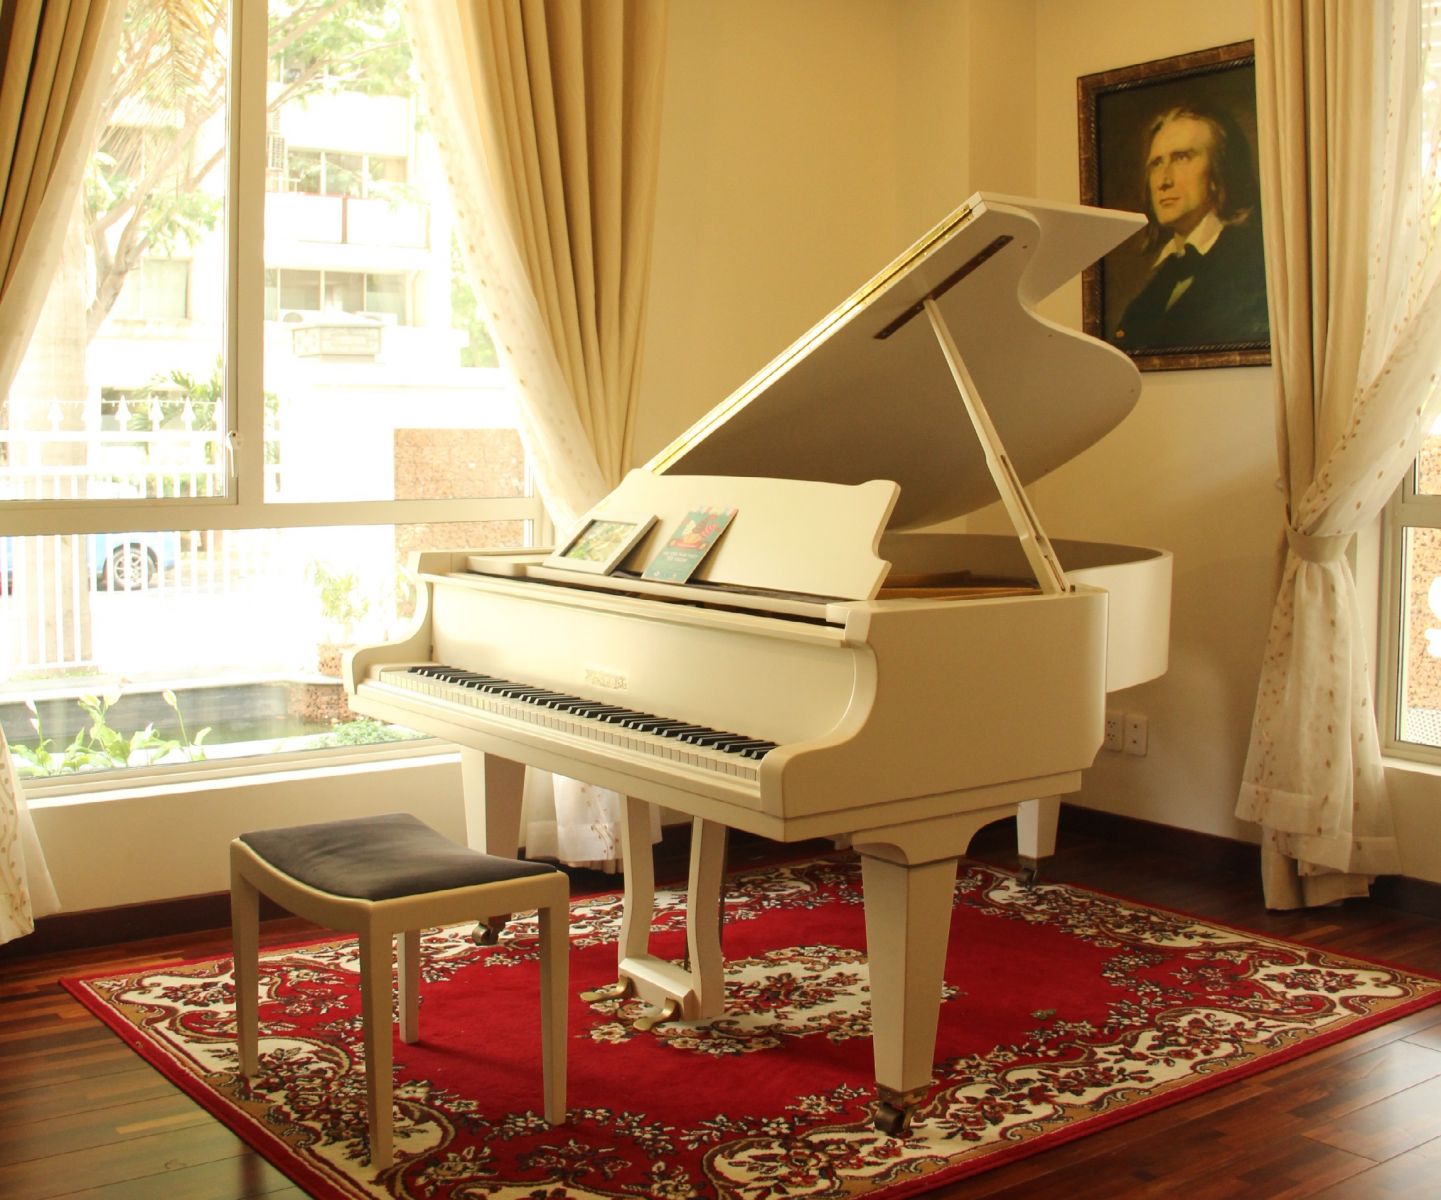 Đàn Piano Pleyel quý tộc và duy nhất tại Việt Nam.